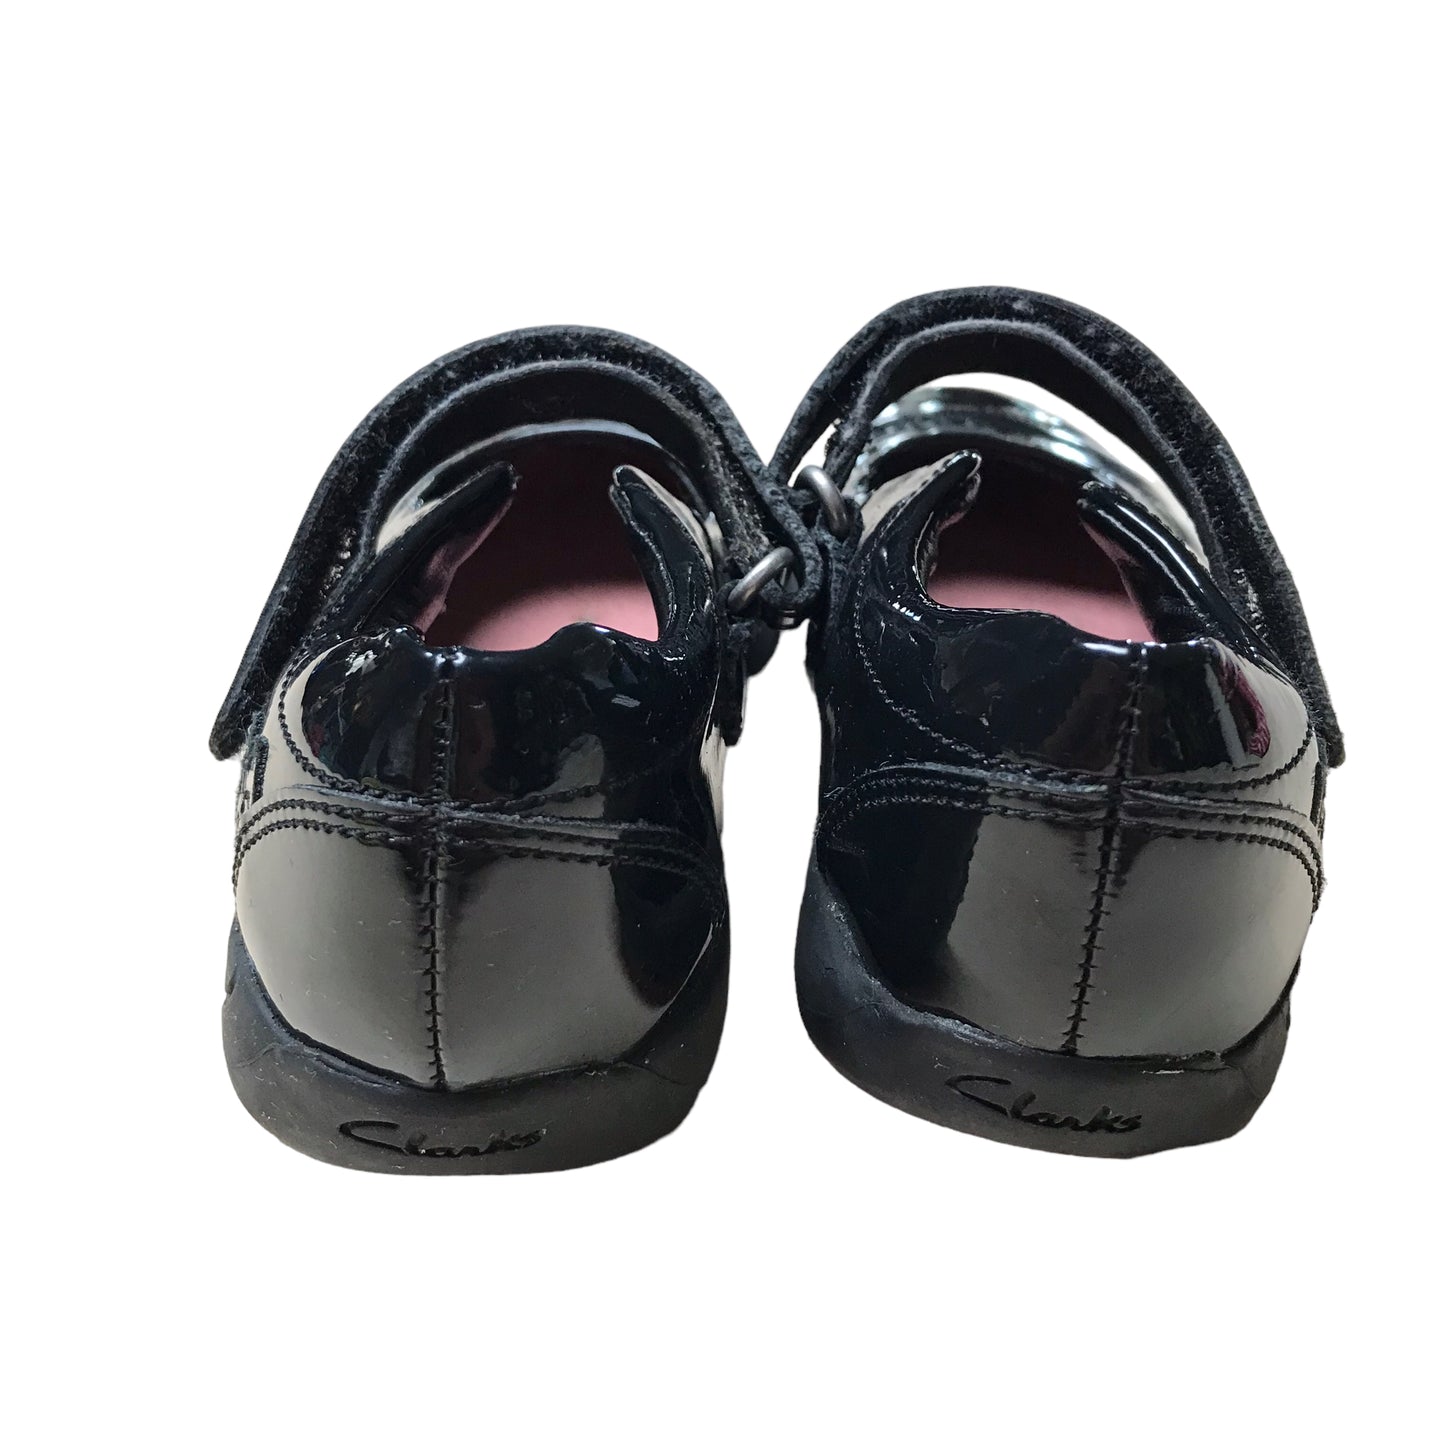 Clarks Black Leather School Shoes Shoe Size 9E junior